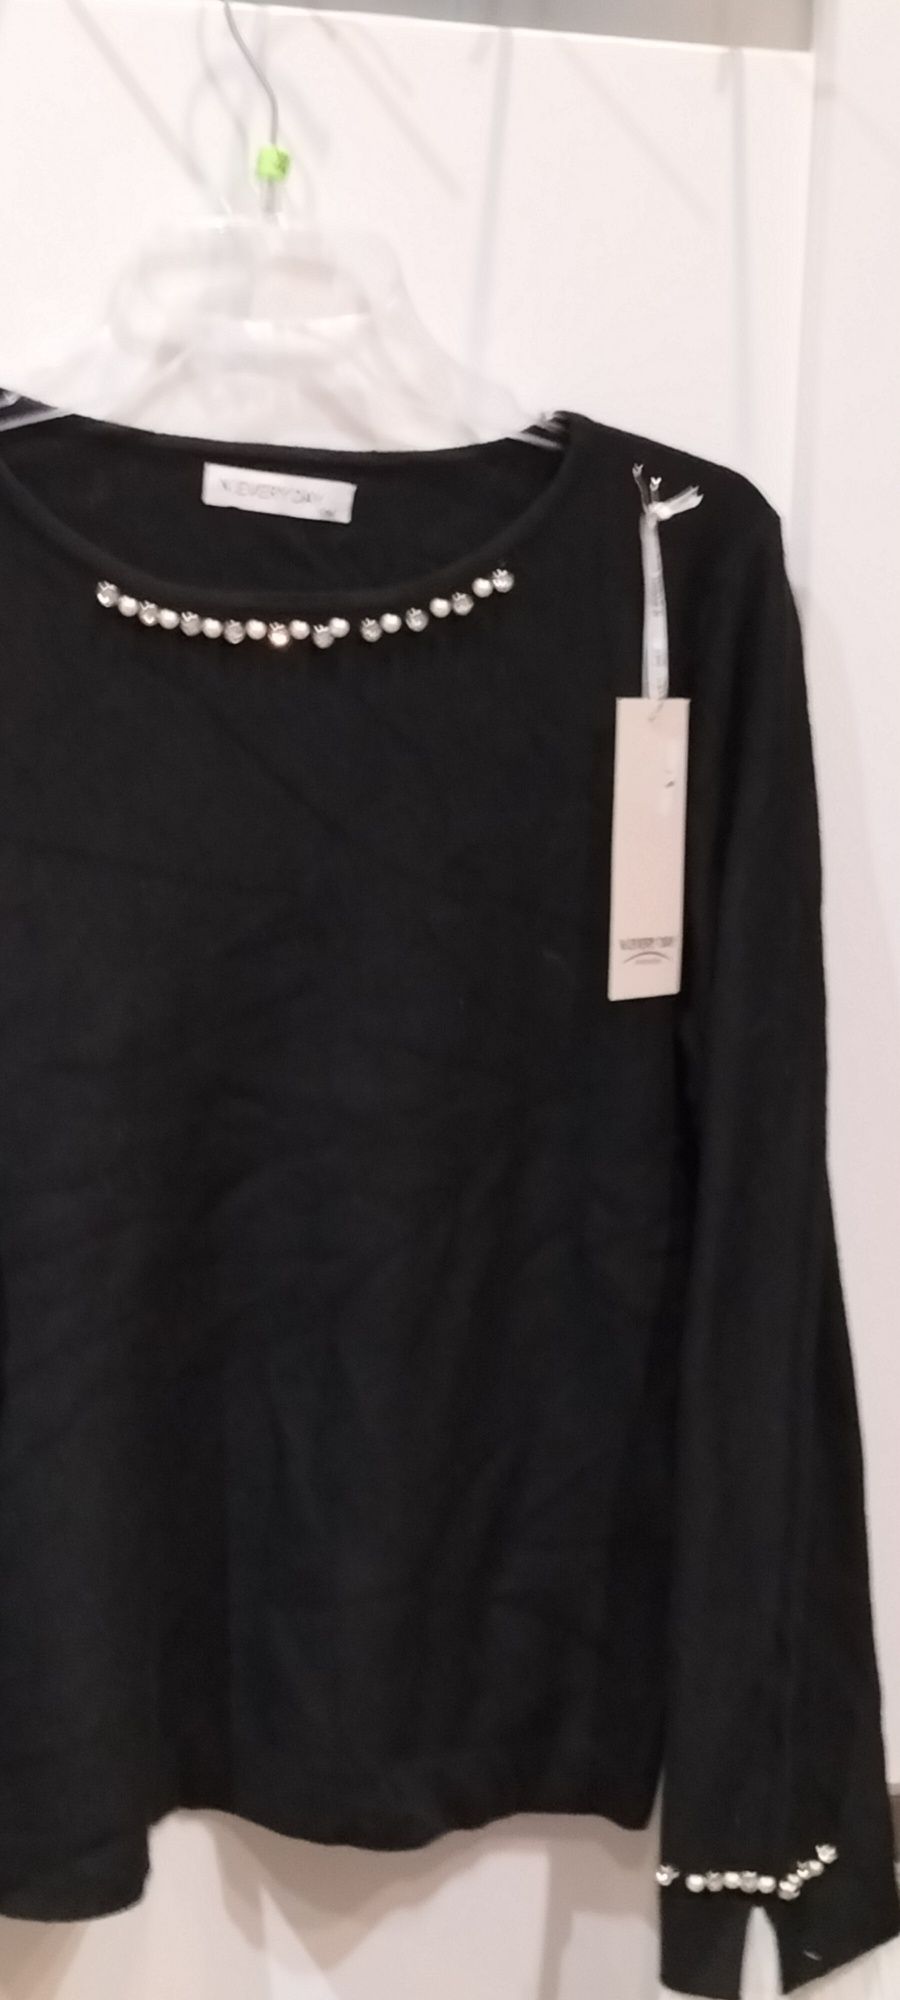 Czarna bluzka zdobiona cyrkoniami i z wstawkami białymi przy rękawach